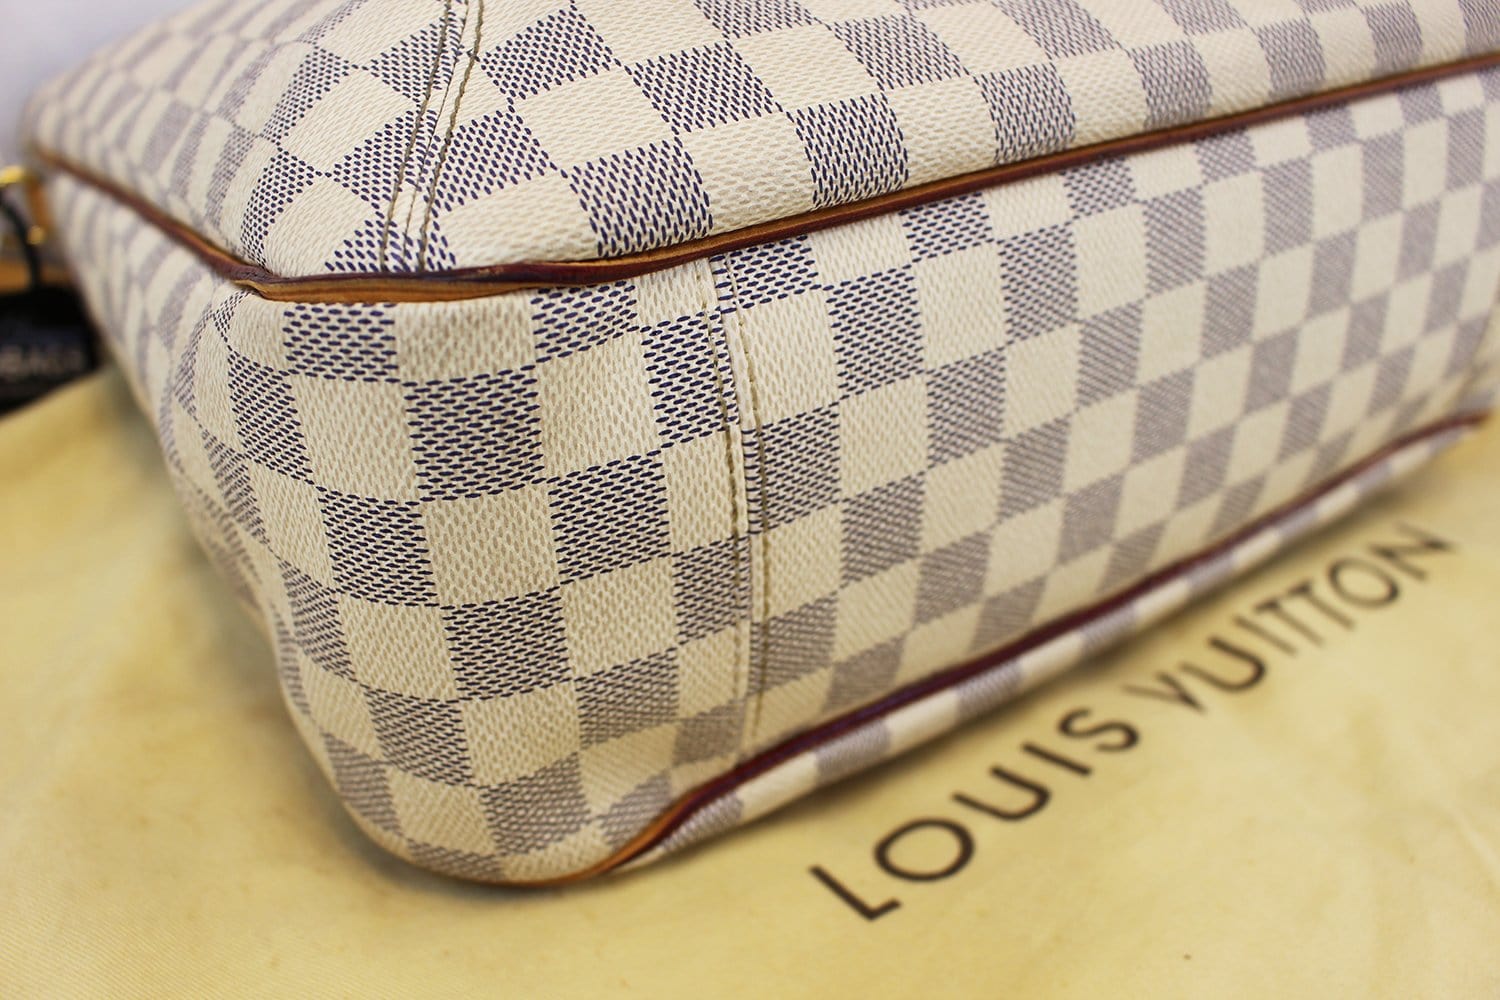 Authentic Louis Vuitton Damier Azur Soffi Shoulder Tote Handbag